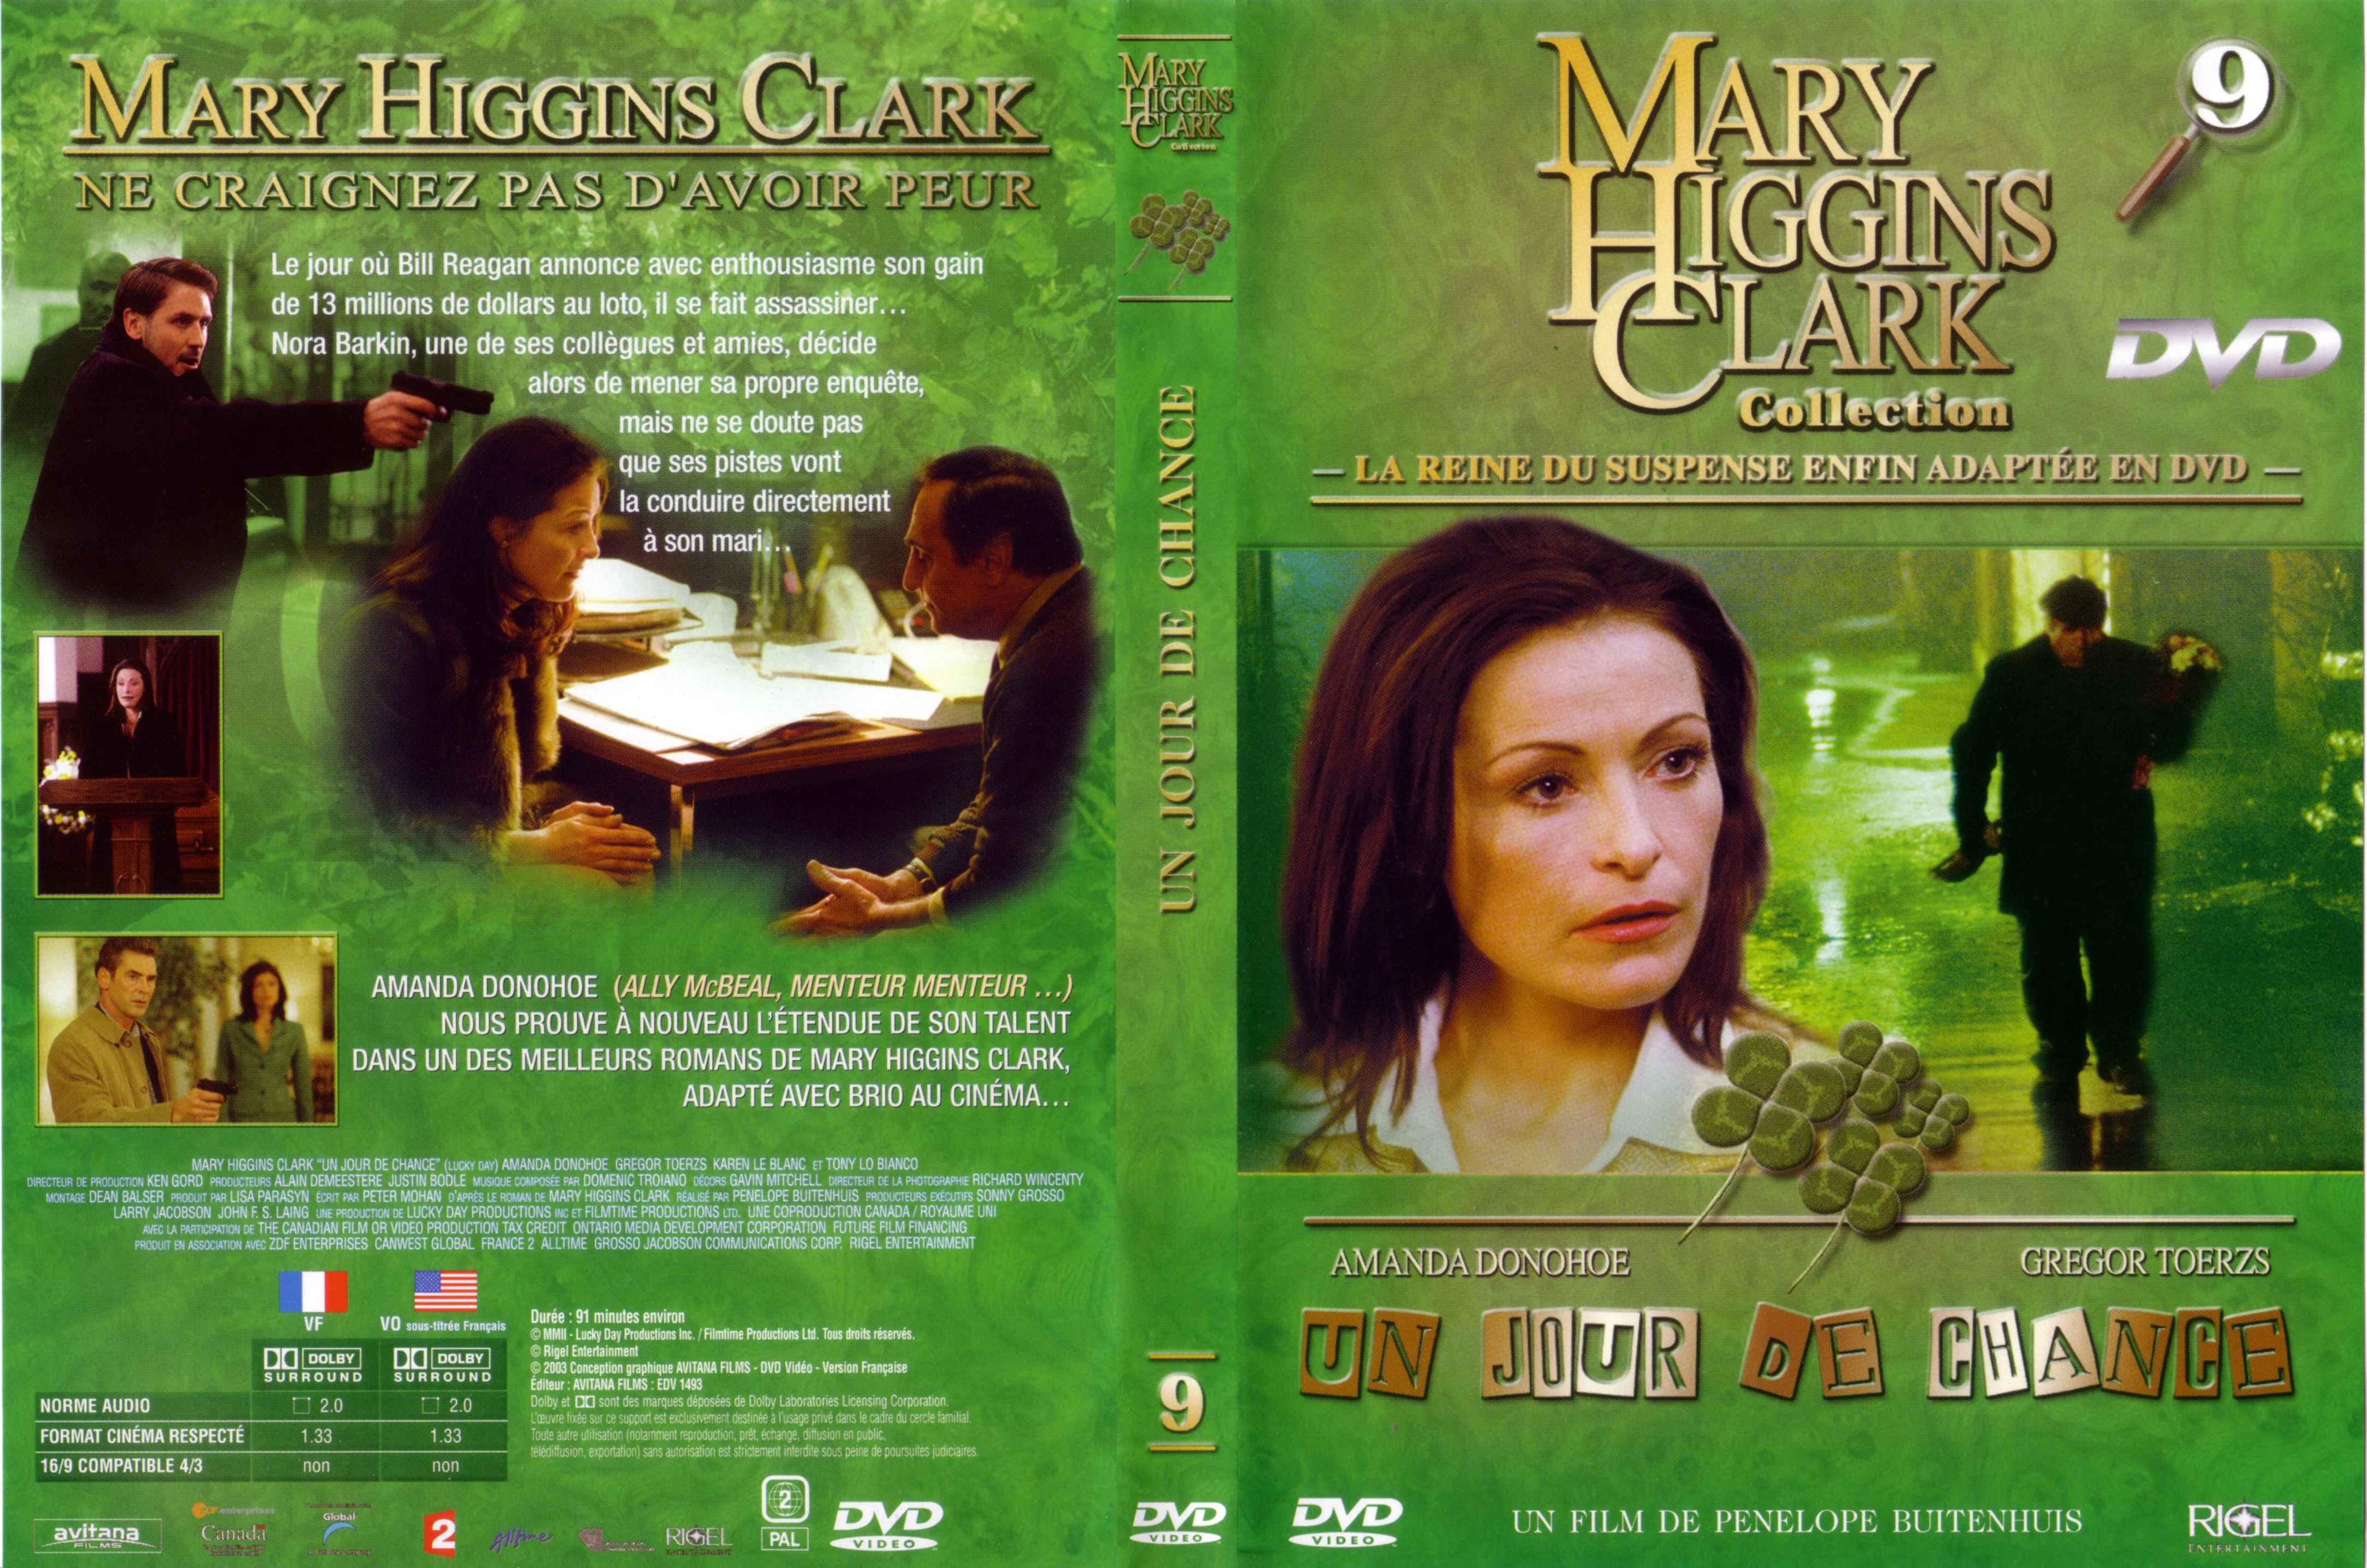 Jaquette DVD de Mary Higgins Clark vol 09 - Un jour de chance - Cinéma Passion